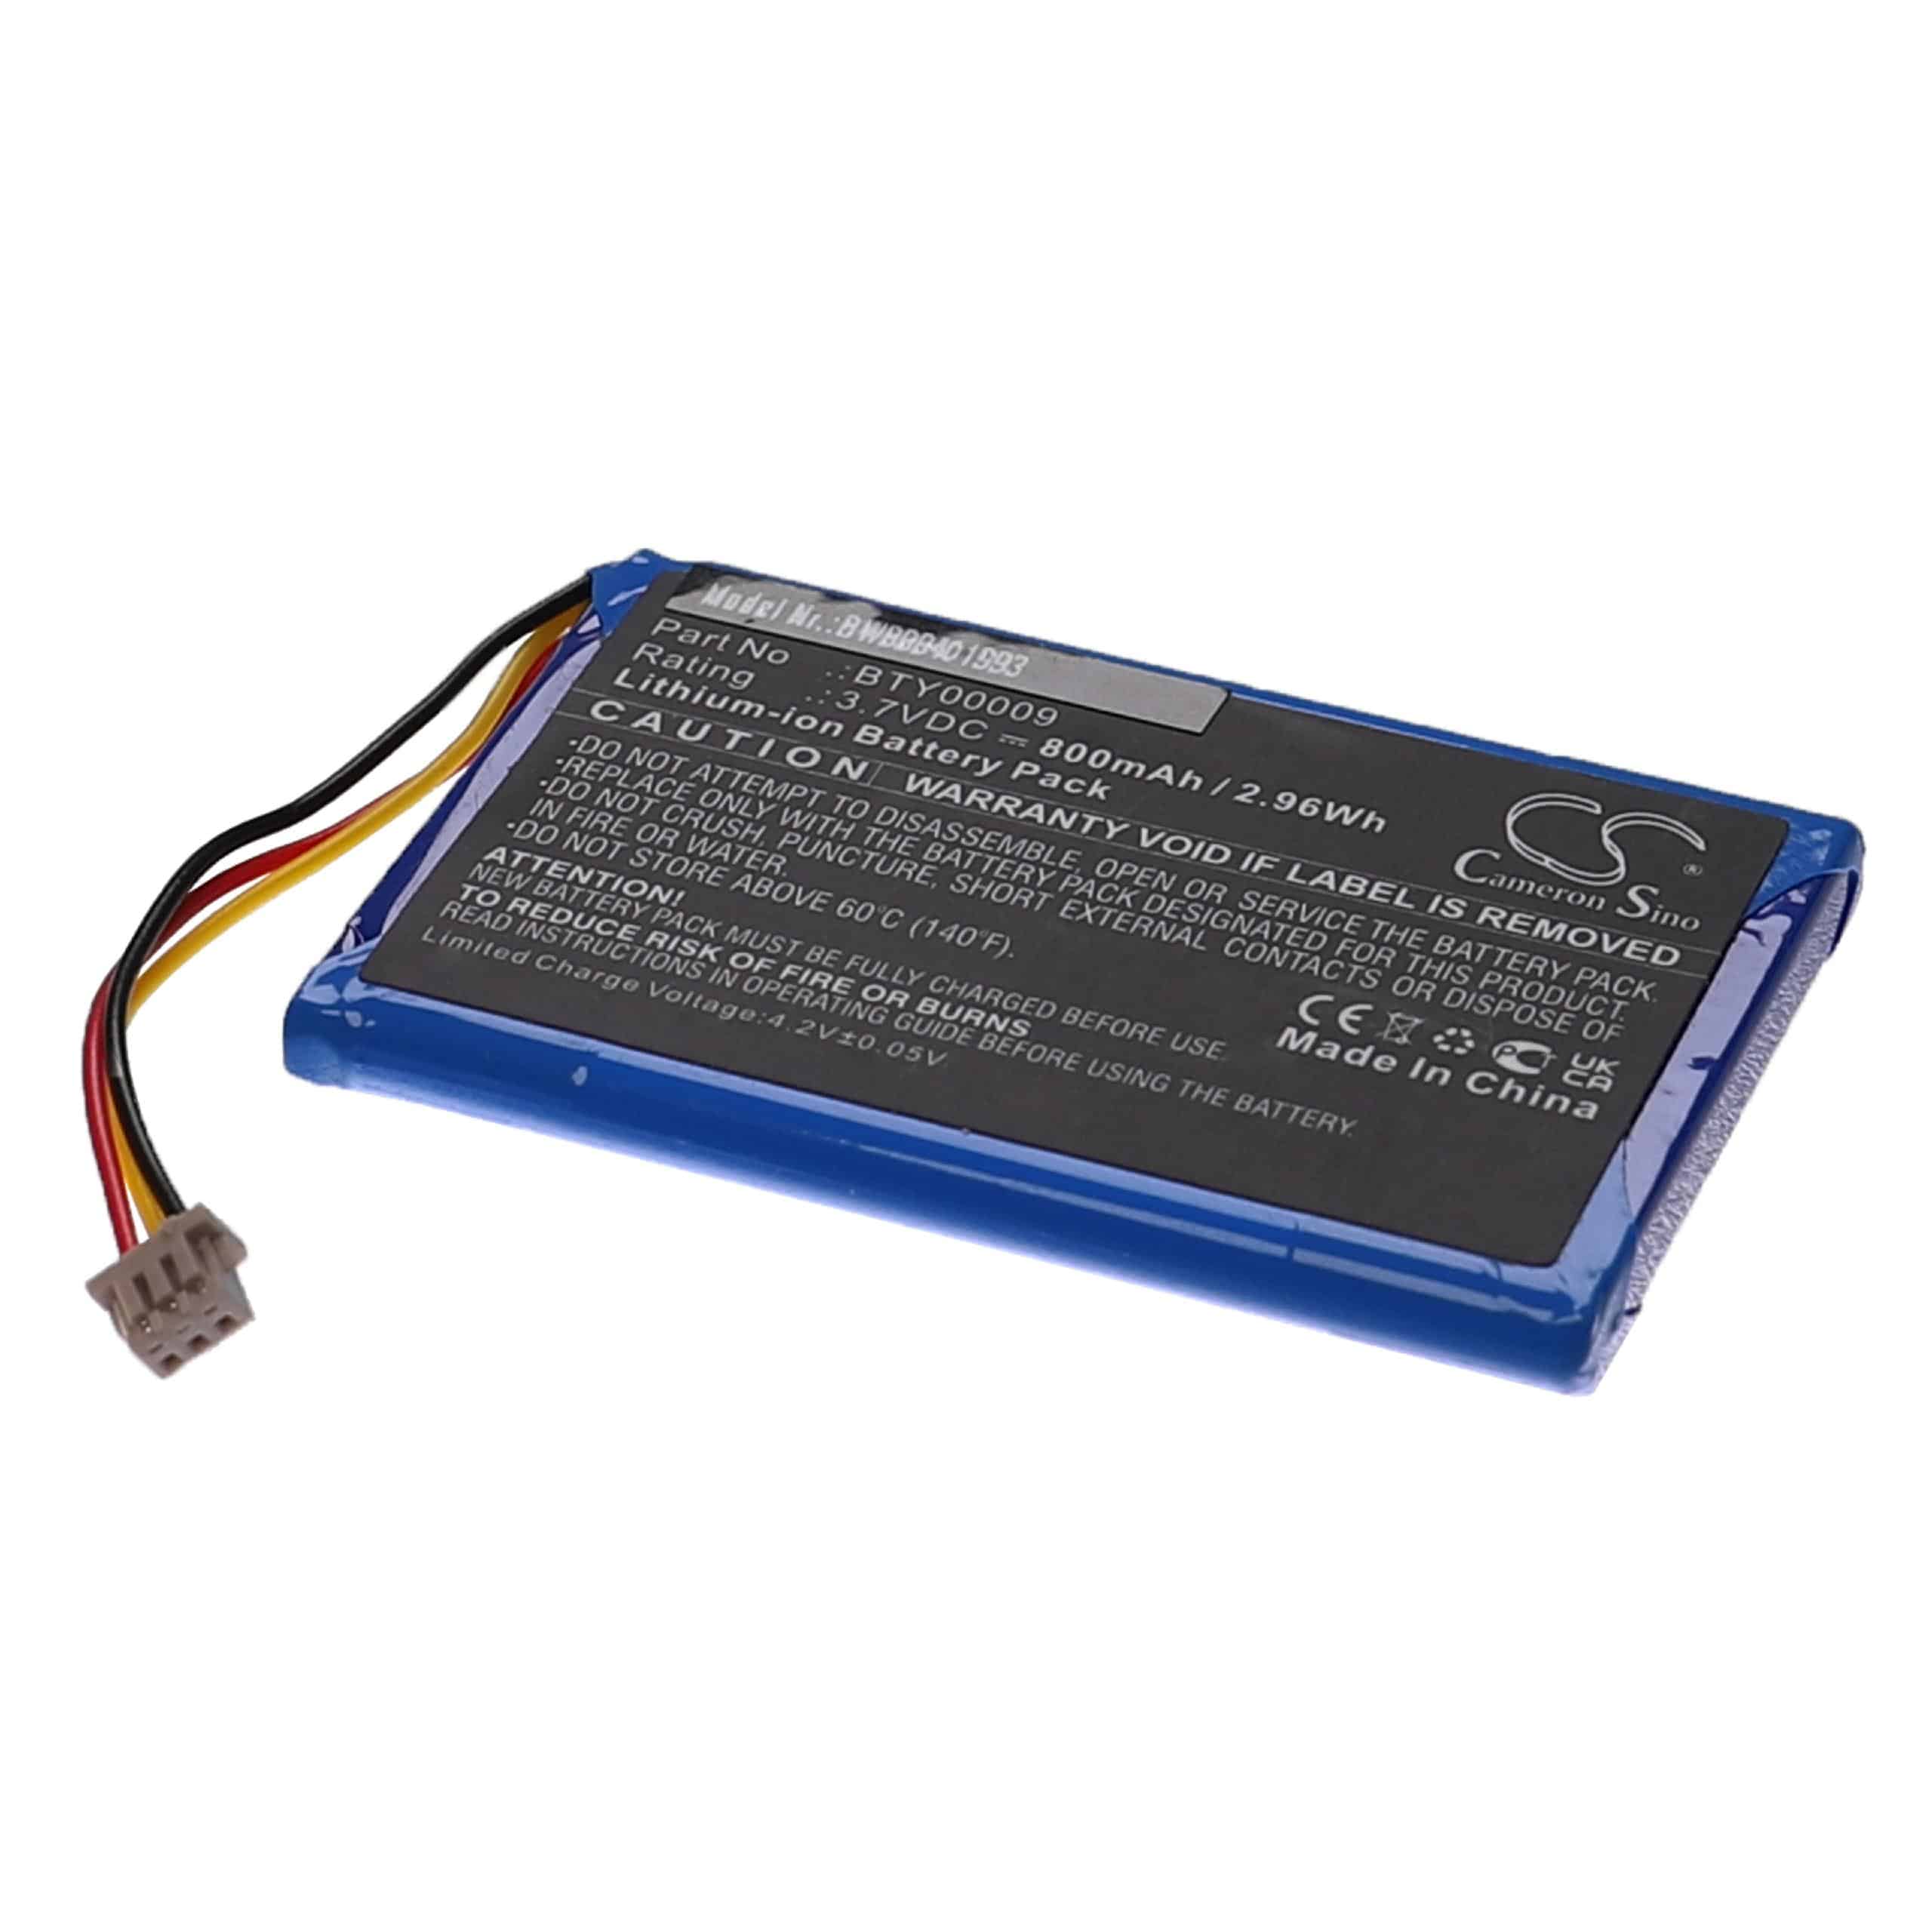 Batteria per lettore di carte di credito sostituisce Ingenico BTY00009 Ingenico - 800mAh 3,7V Li-Ion